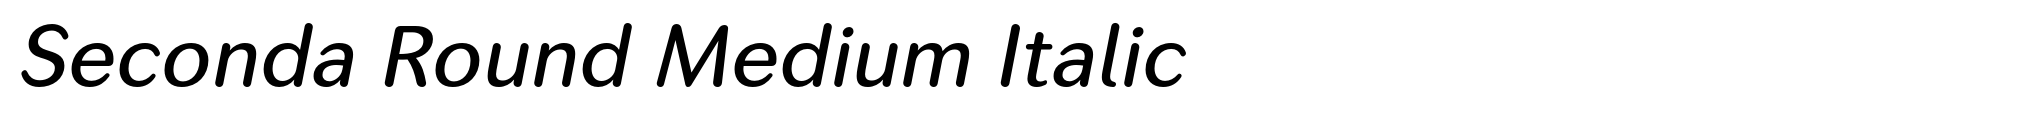 Seconda Round Medium Italic image